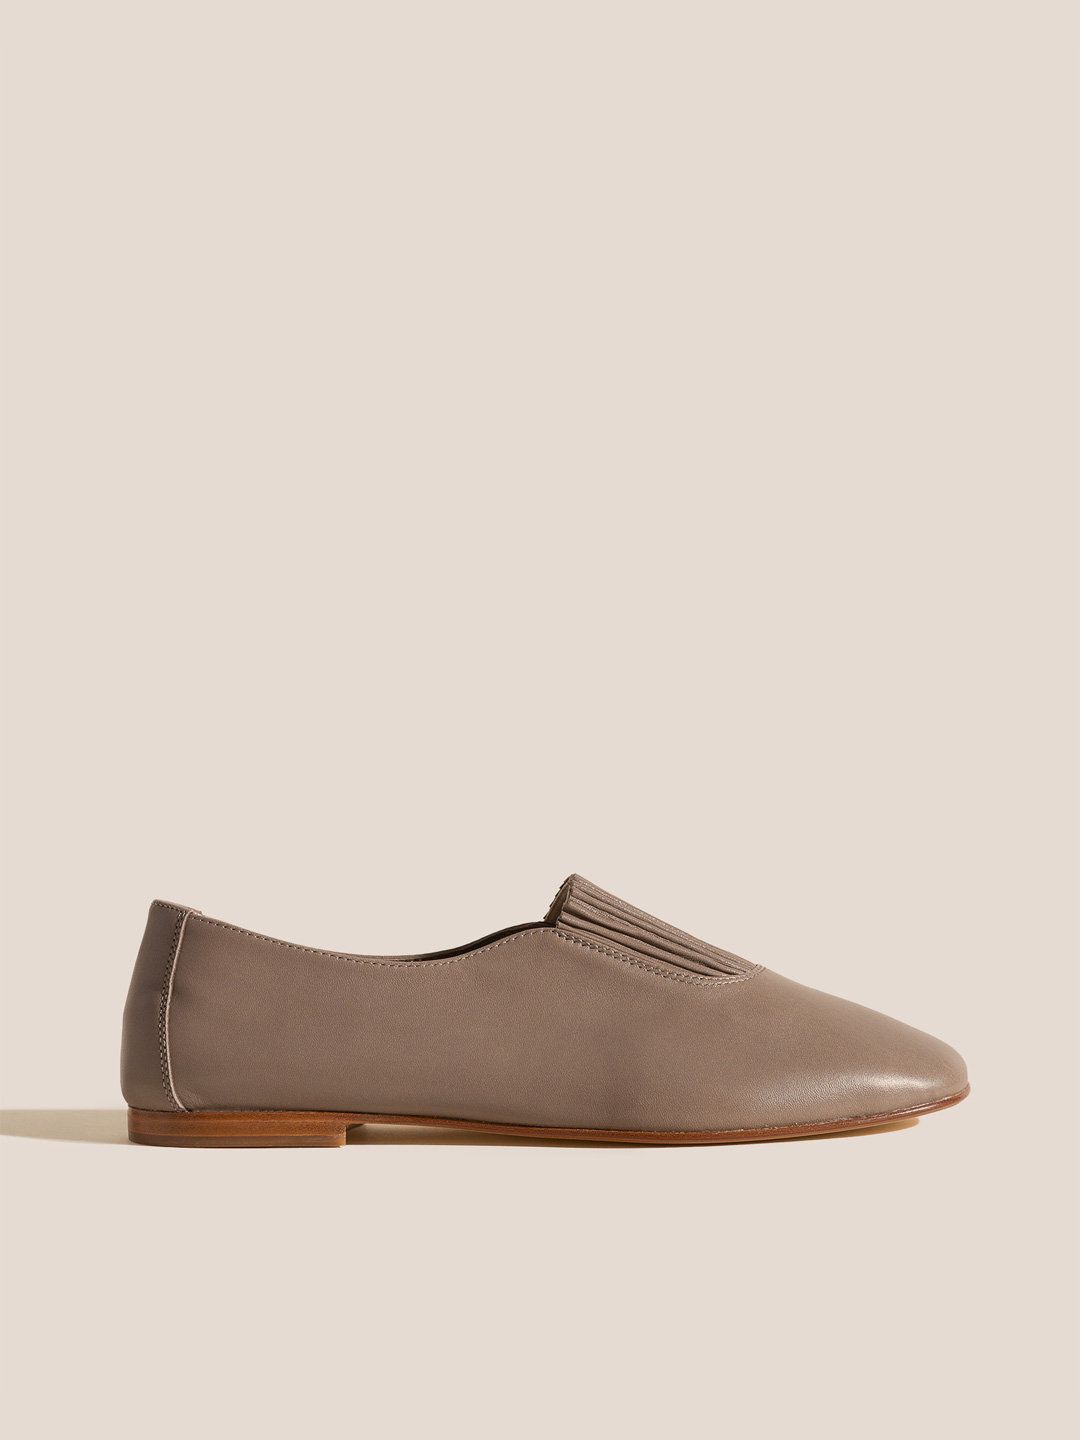 CAOMA - Elasticated Slip-on Shoe - Ash